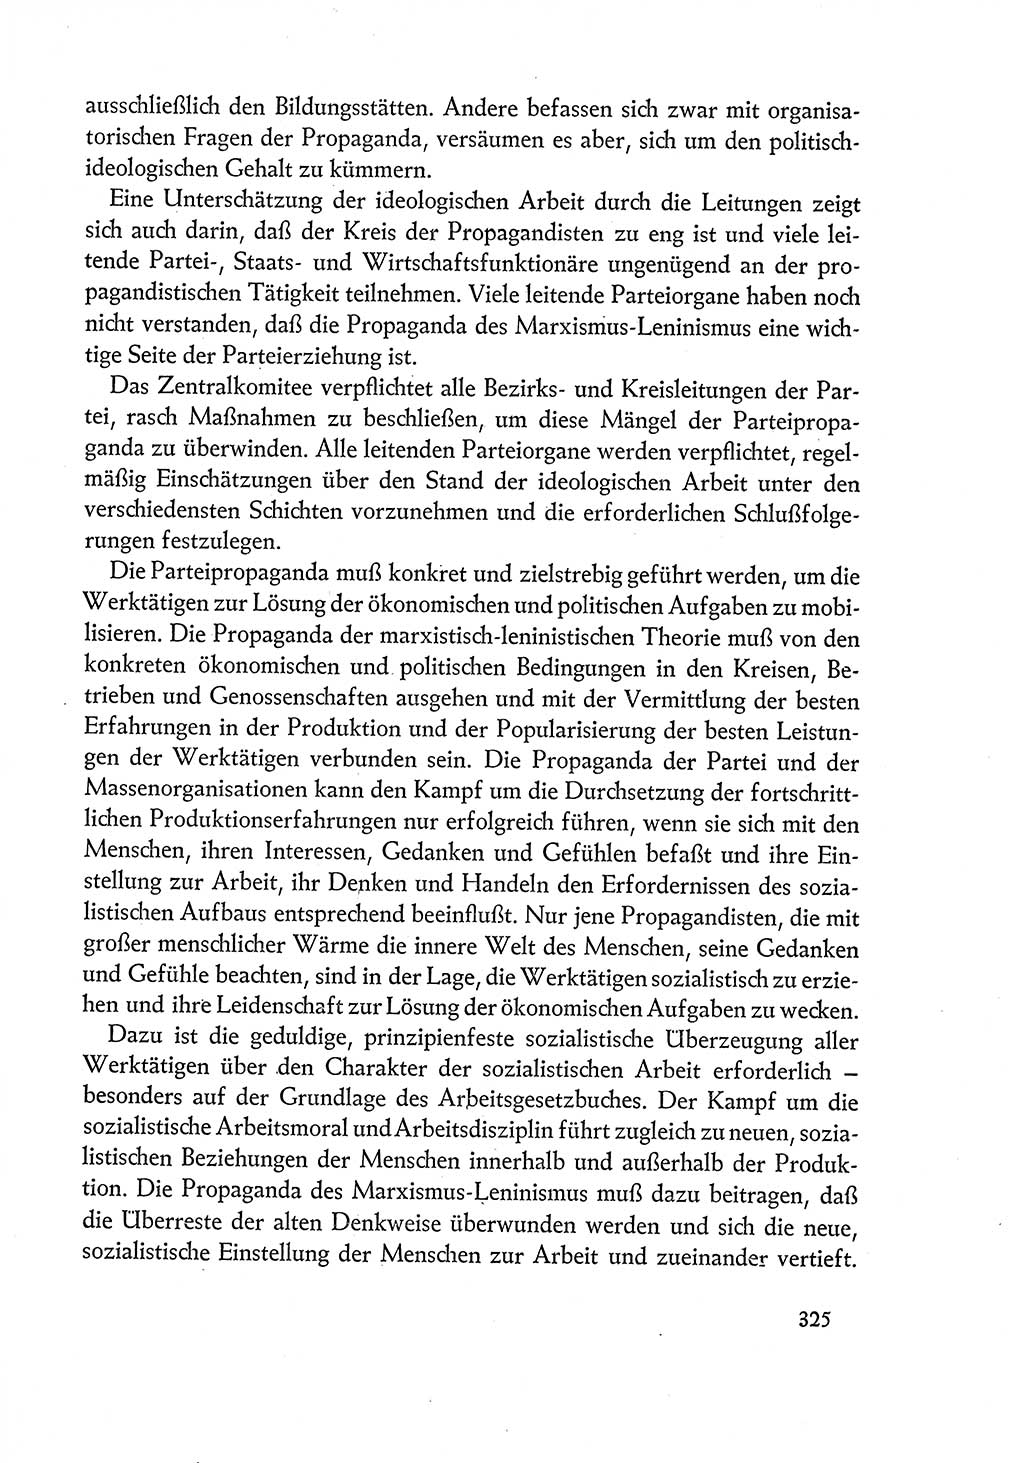 Dokumente der Sozialistischen Einheitspartei Deutschlands (SED) [Deutsche Demokratische Republik (DDR)] 1960-1961, Seite 325 (Dok. SED DDR 1960-1961, S. 325)